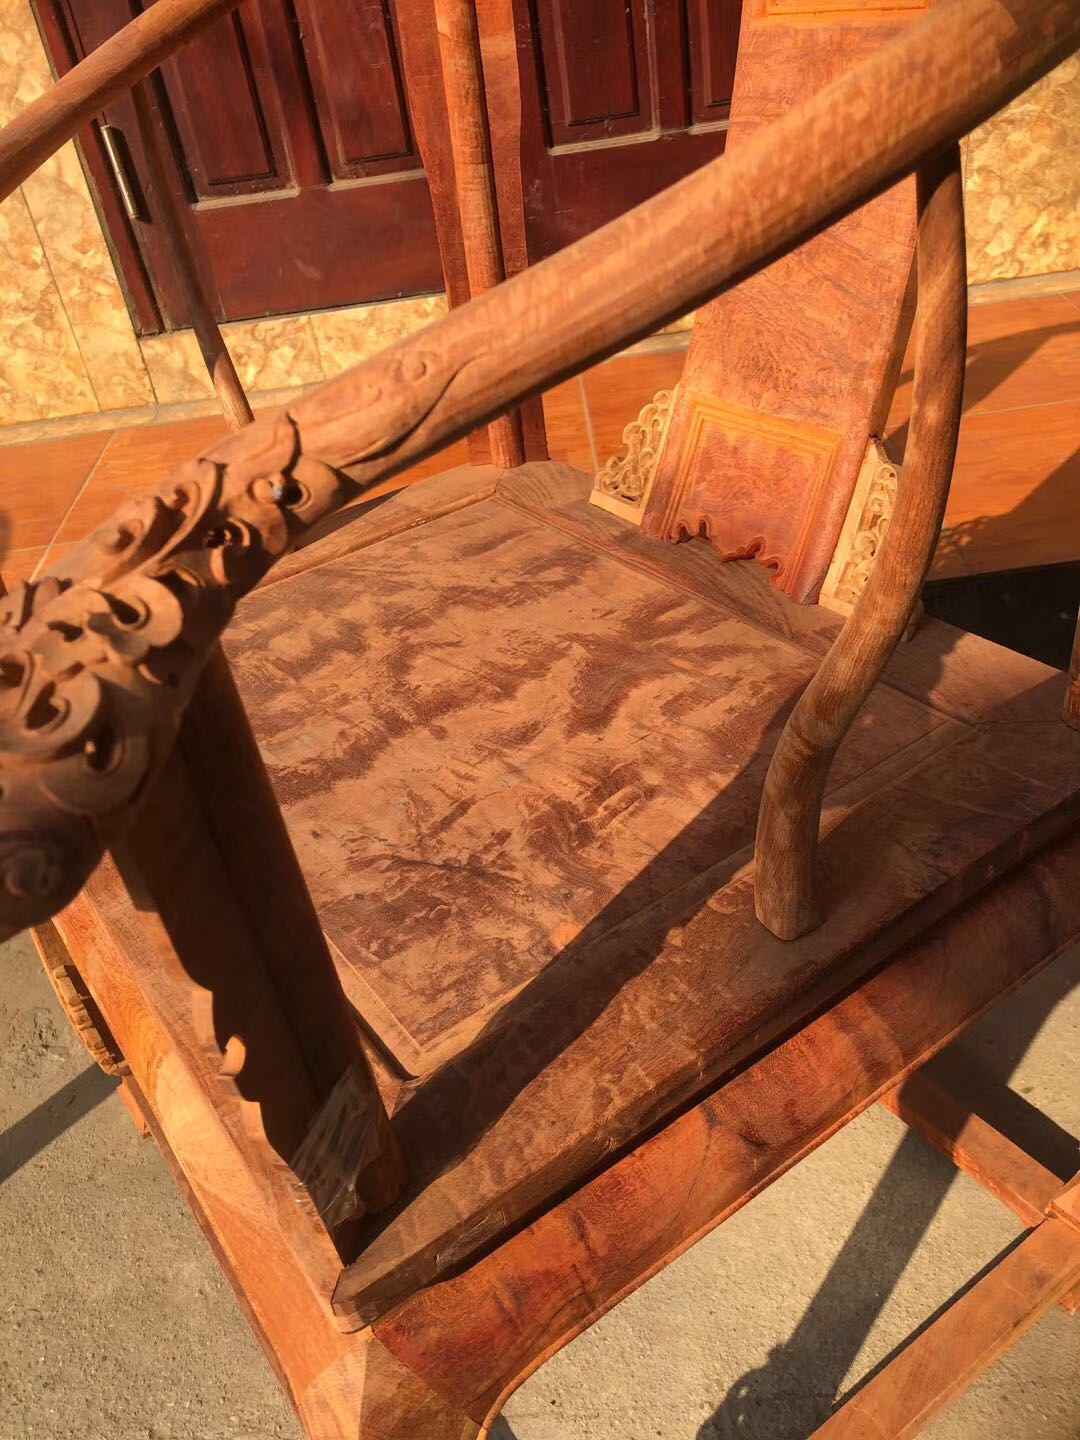 座山雕的虎皮椅子图片